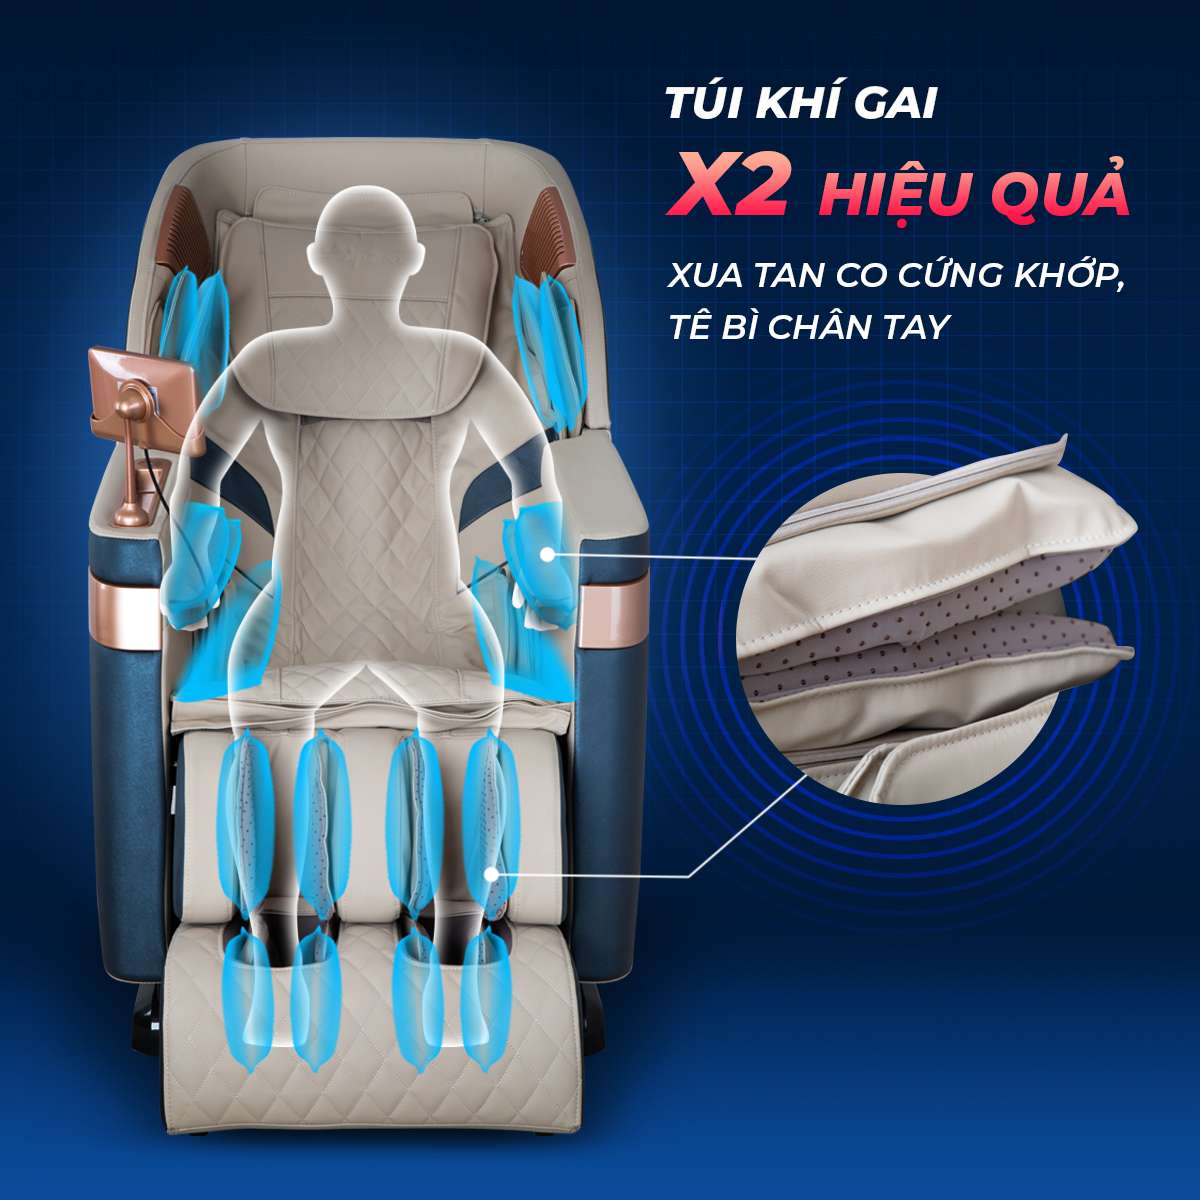 Địa chỉ mua ghế massage ở Lạng Sơn nhập khẩu giá tốt nhất